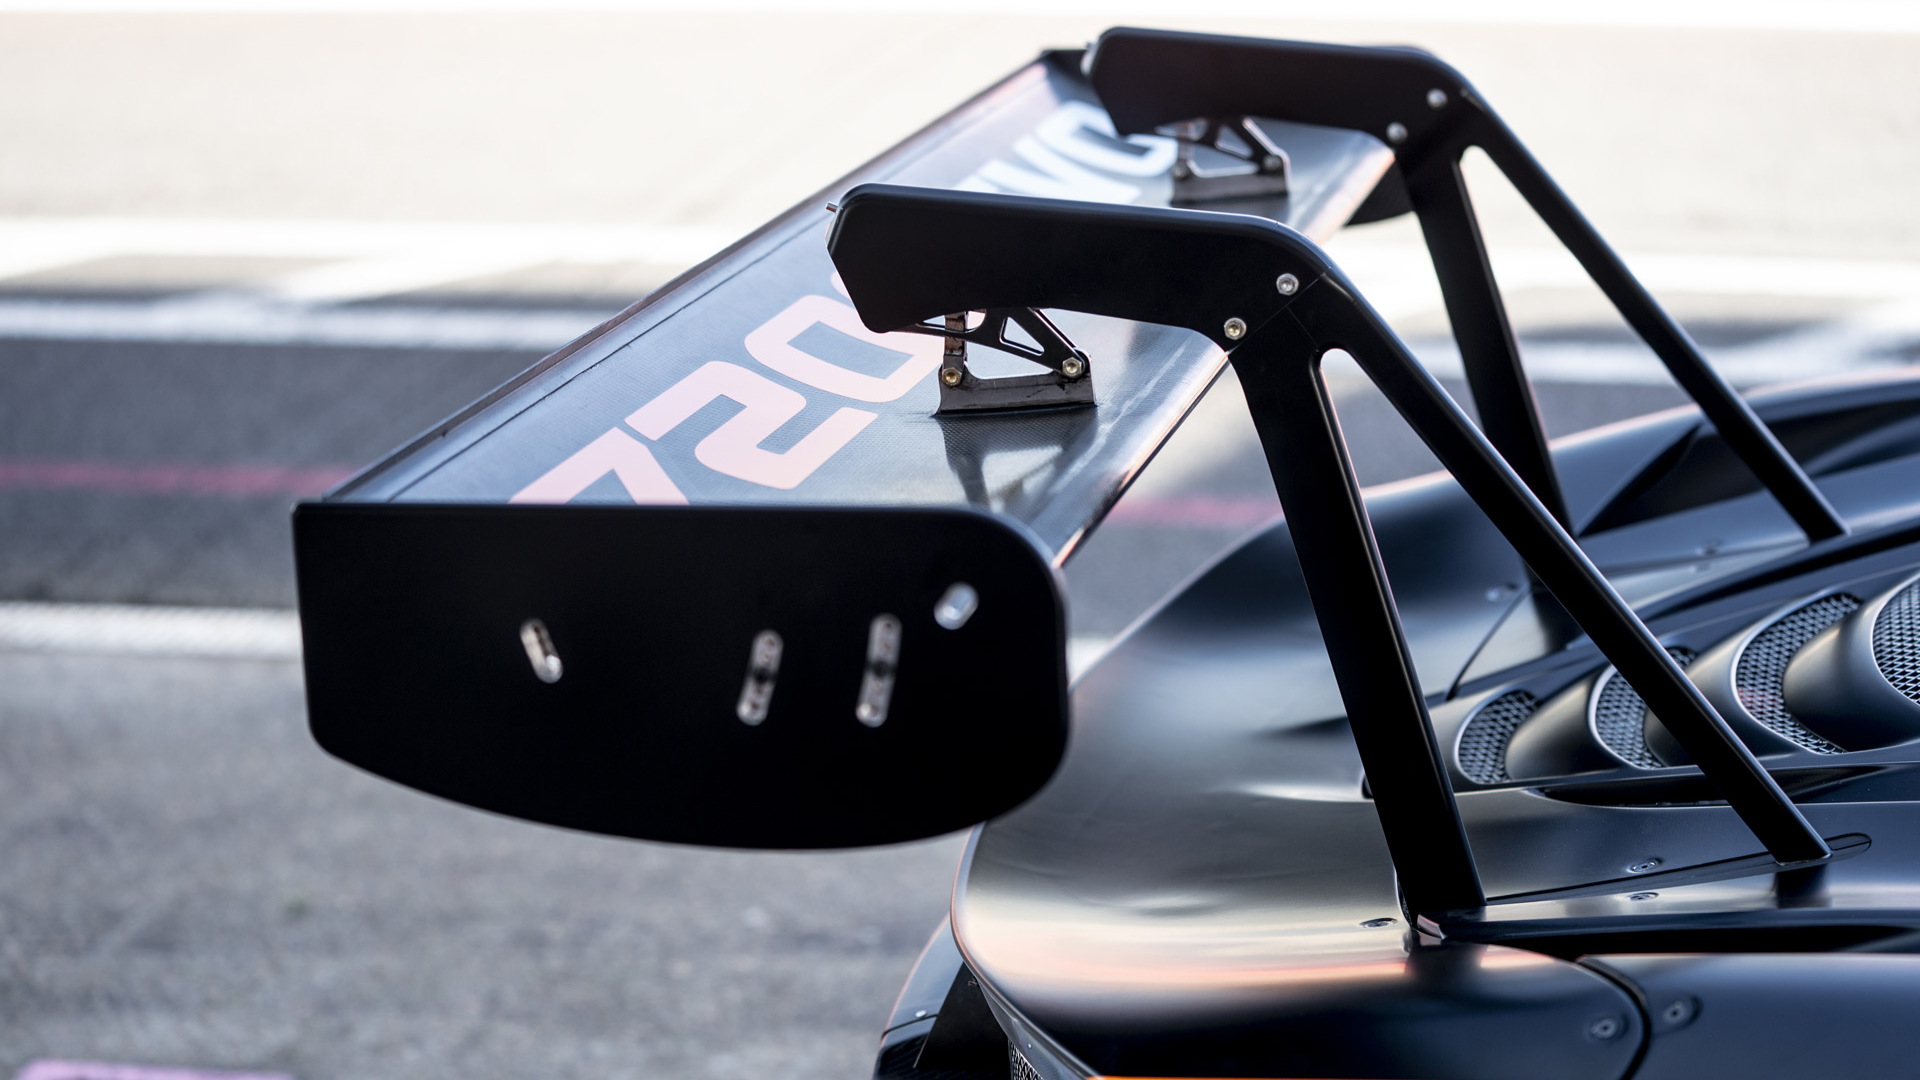 2023 McLaren 720S GT3 Evo race car